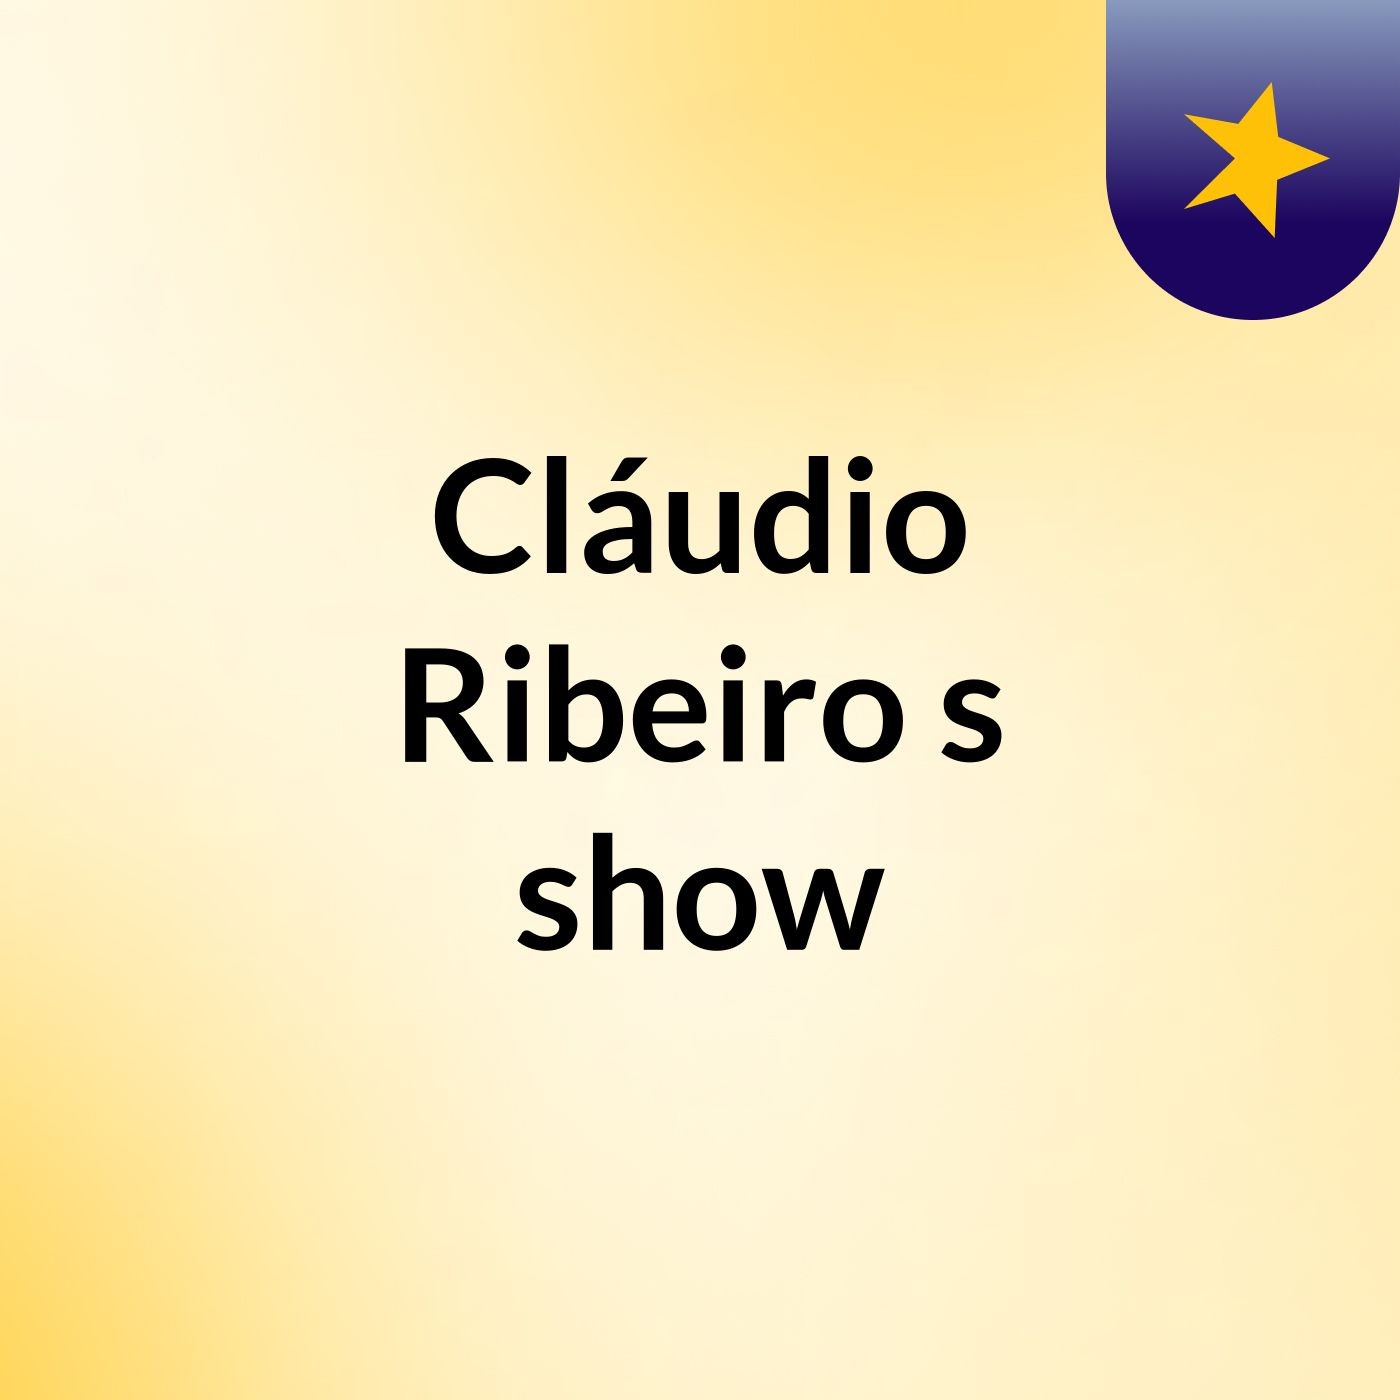 Cláudio Ribeiro's show